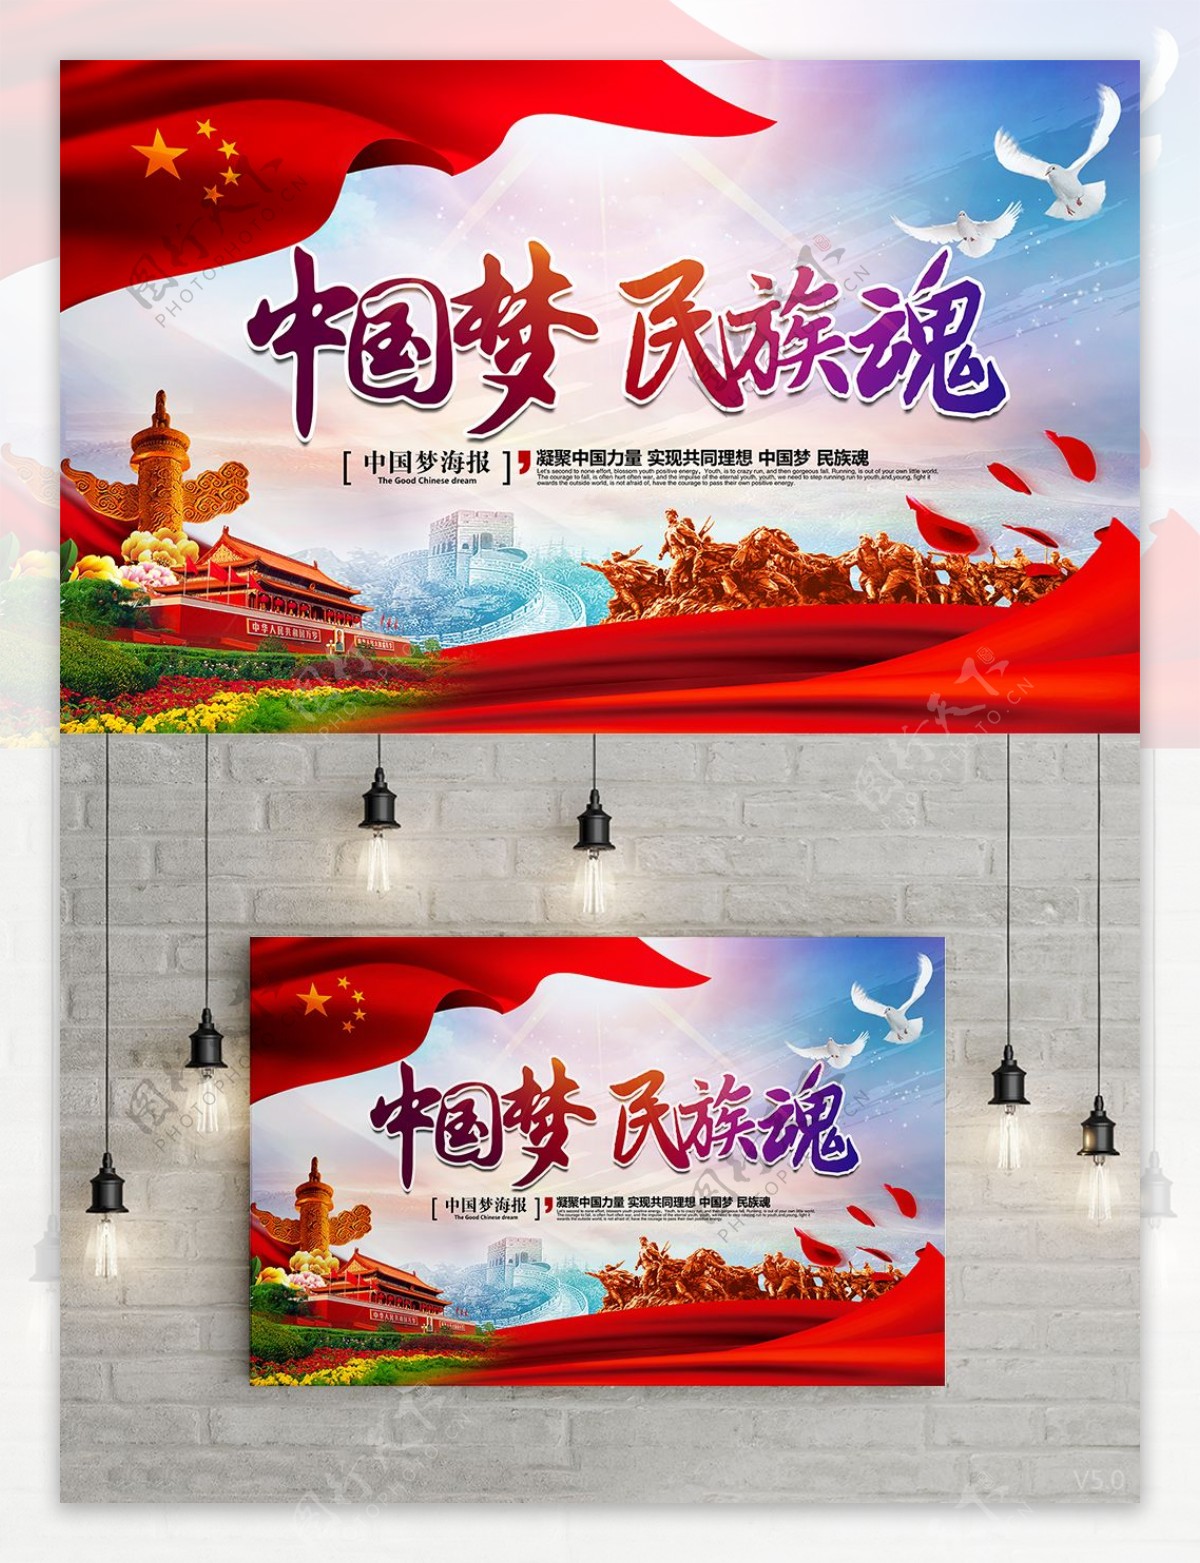 唯美大气炫彩中国梦民族魂中国梦党建海报